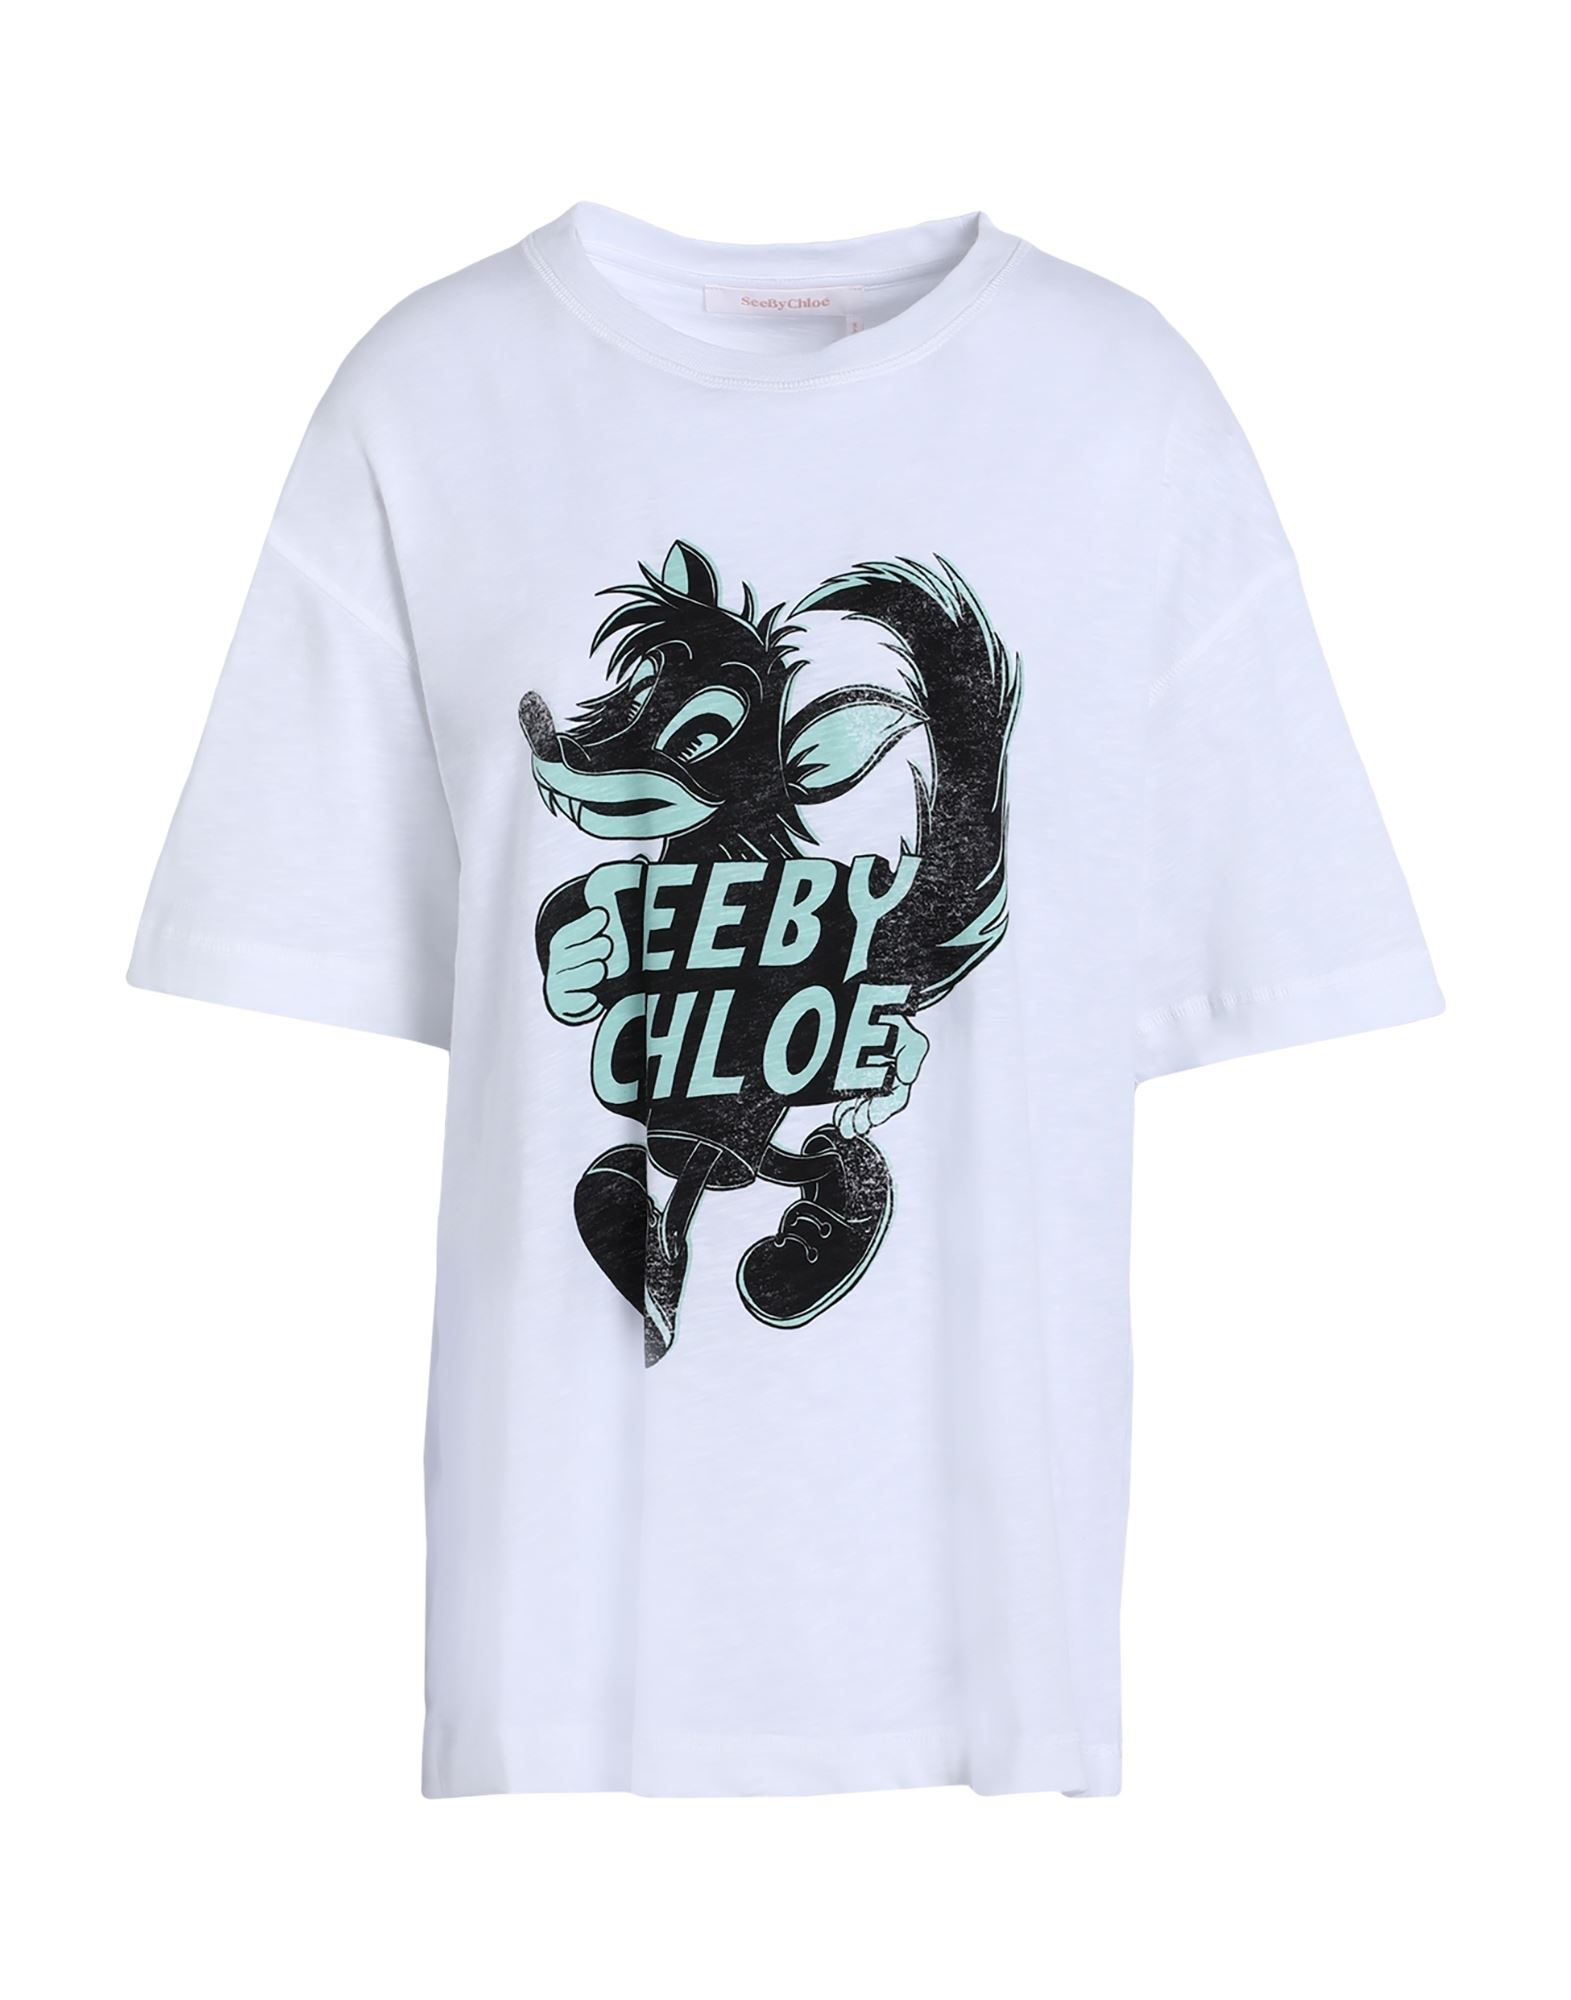 See By Chloé Woman T-shirt White Size M Cotton